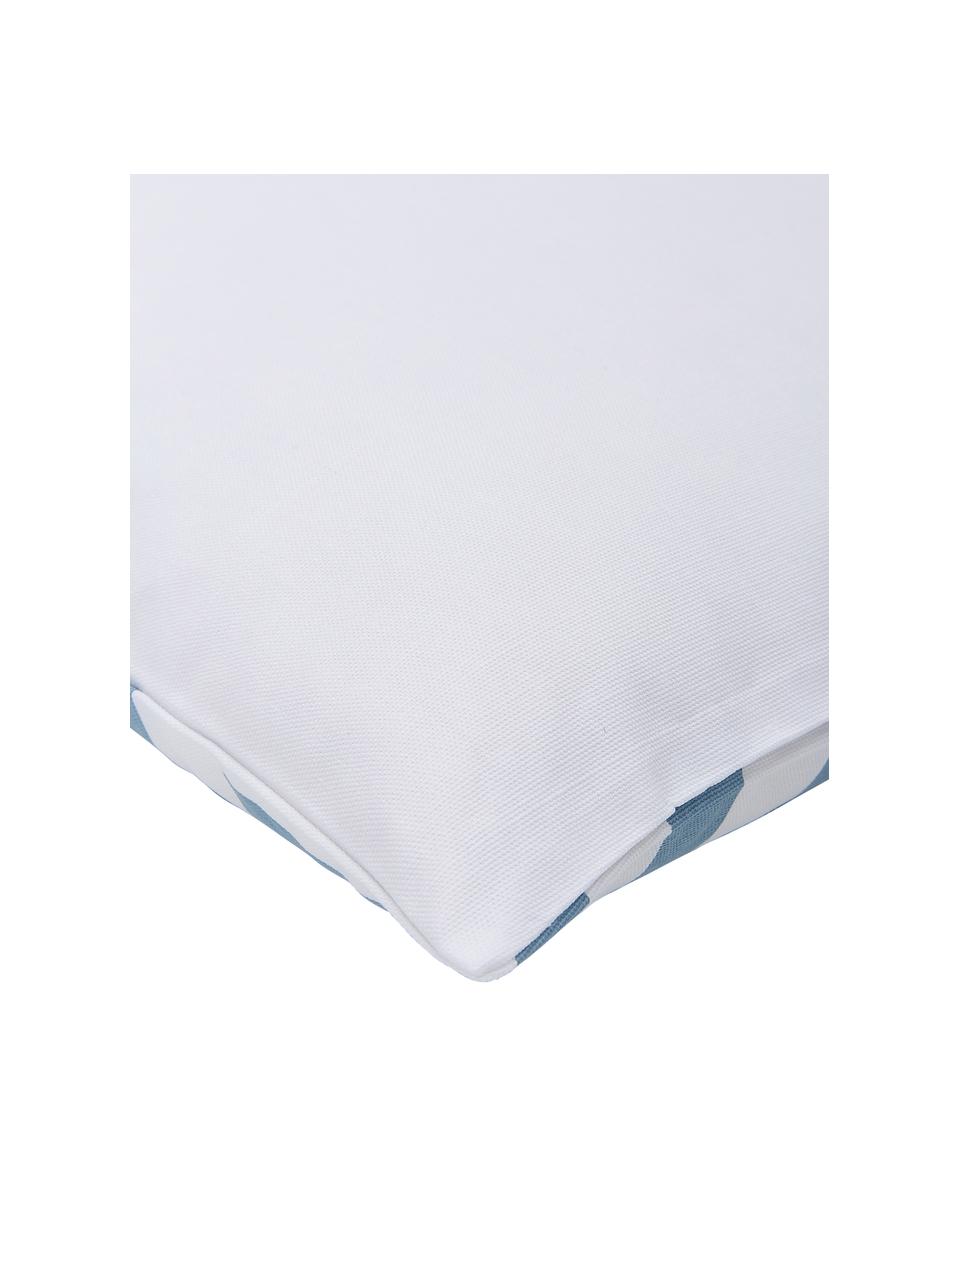 Poszewka na poduszkę Bram, 100% bawełna, Biały, jasny niebieski, S 45 x D 45 cm